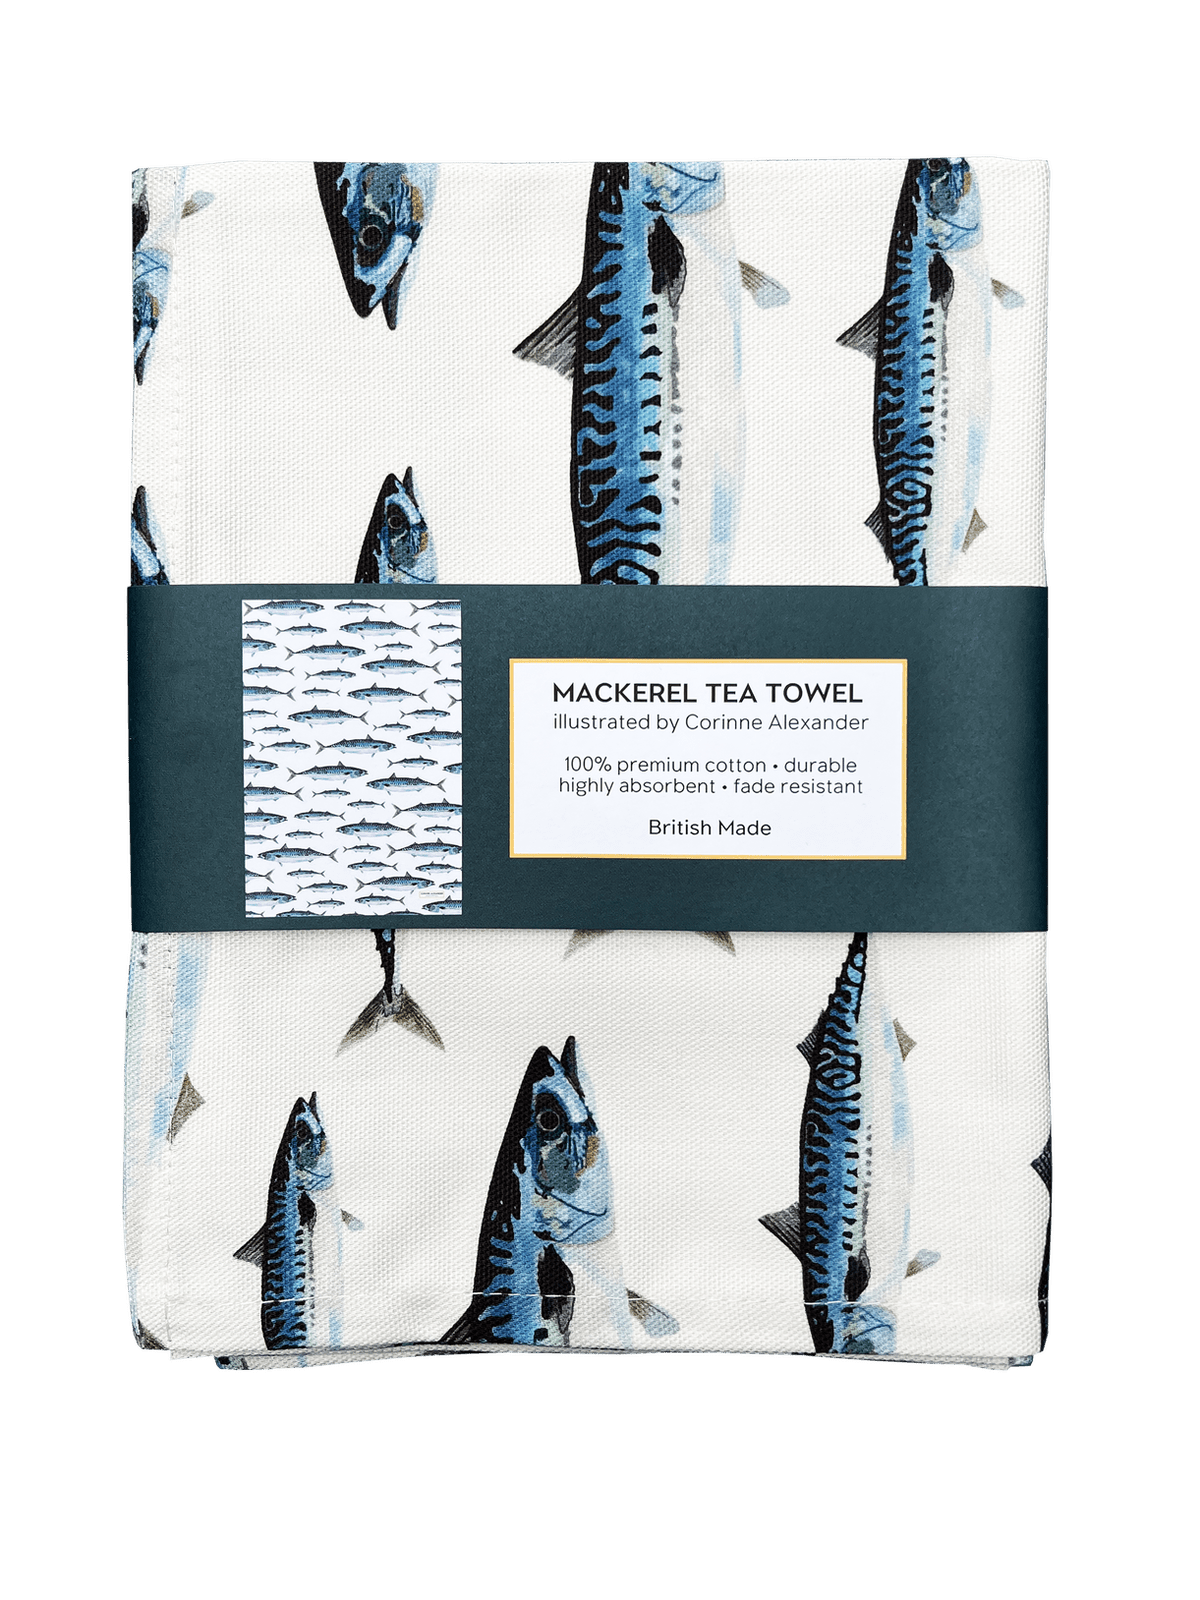 Mackerel tea towel, an unusual gift for him